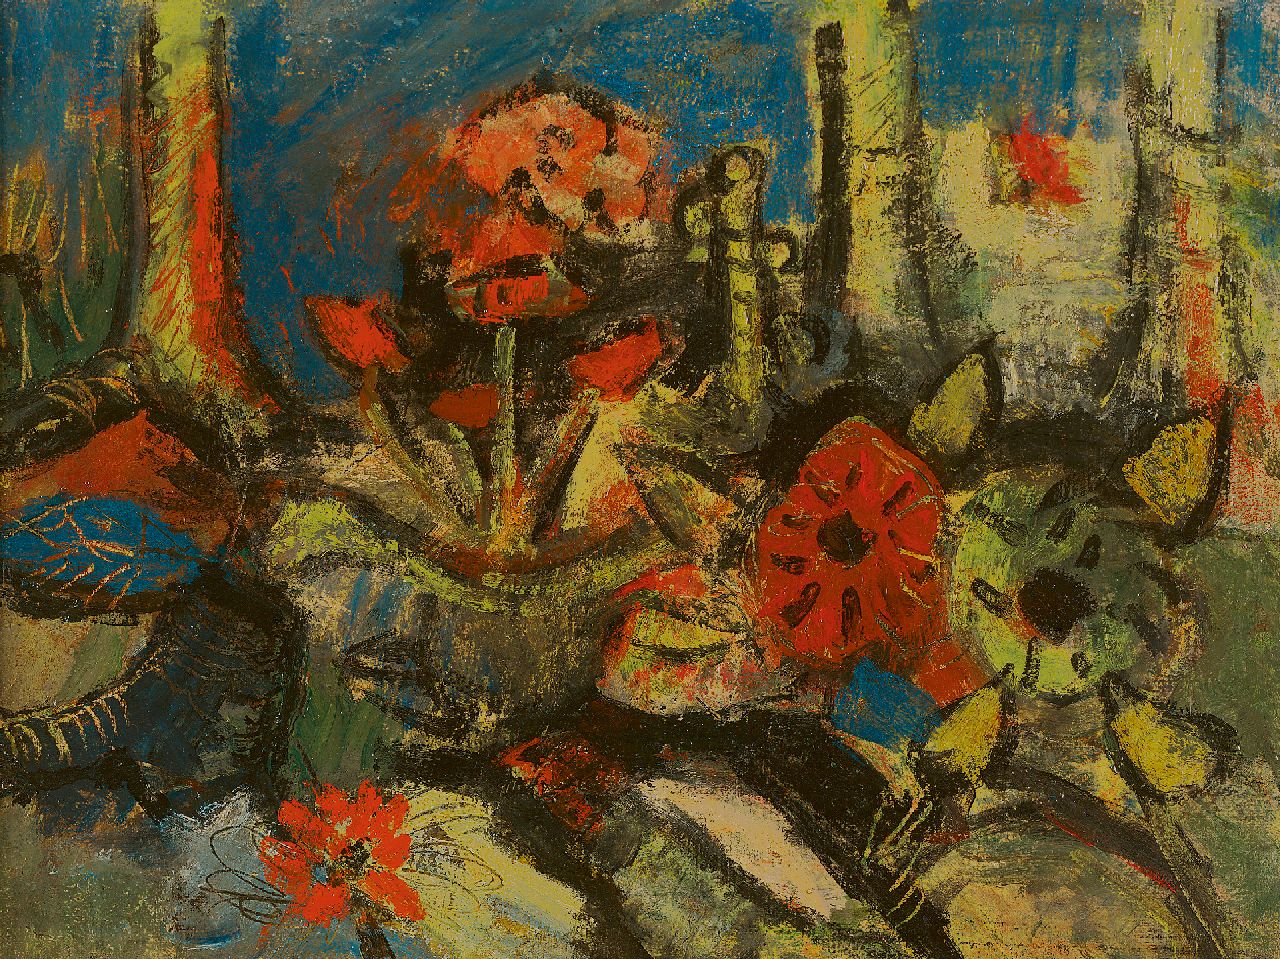 Kruyder H.J.  | 'Herman' Justus Kruyder | Gemälde zum Verkauf angeboten | Blumenstrauss, Öl auf Leinwand 30,7 x 40,4 cm, zu datieren um 1925